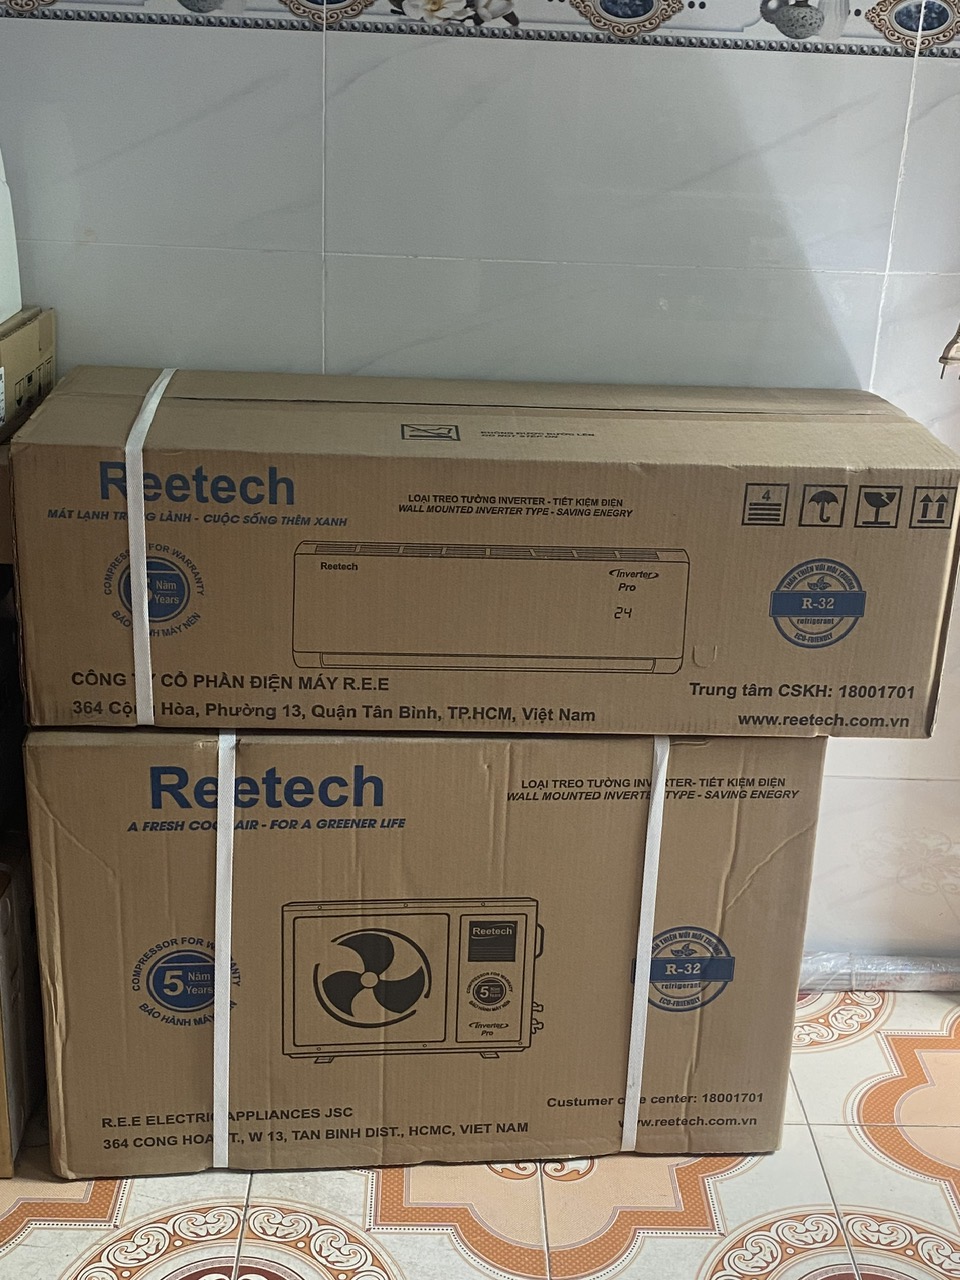 Chọn máy lạnh Reetech - Giá rẻ bất ngời